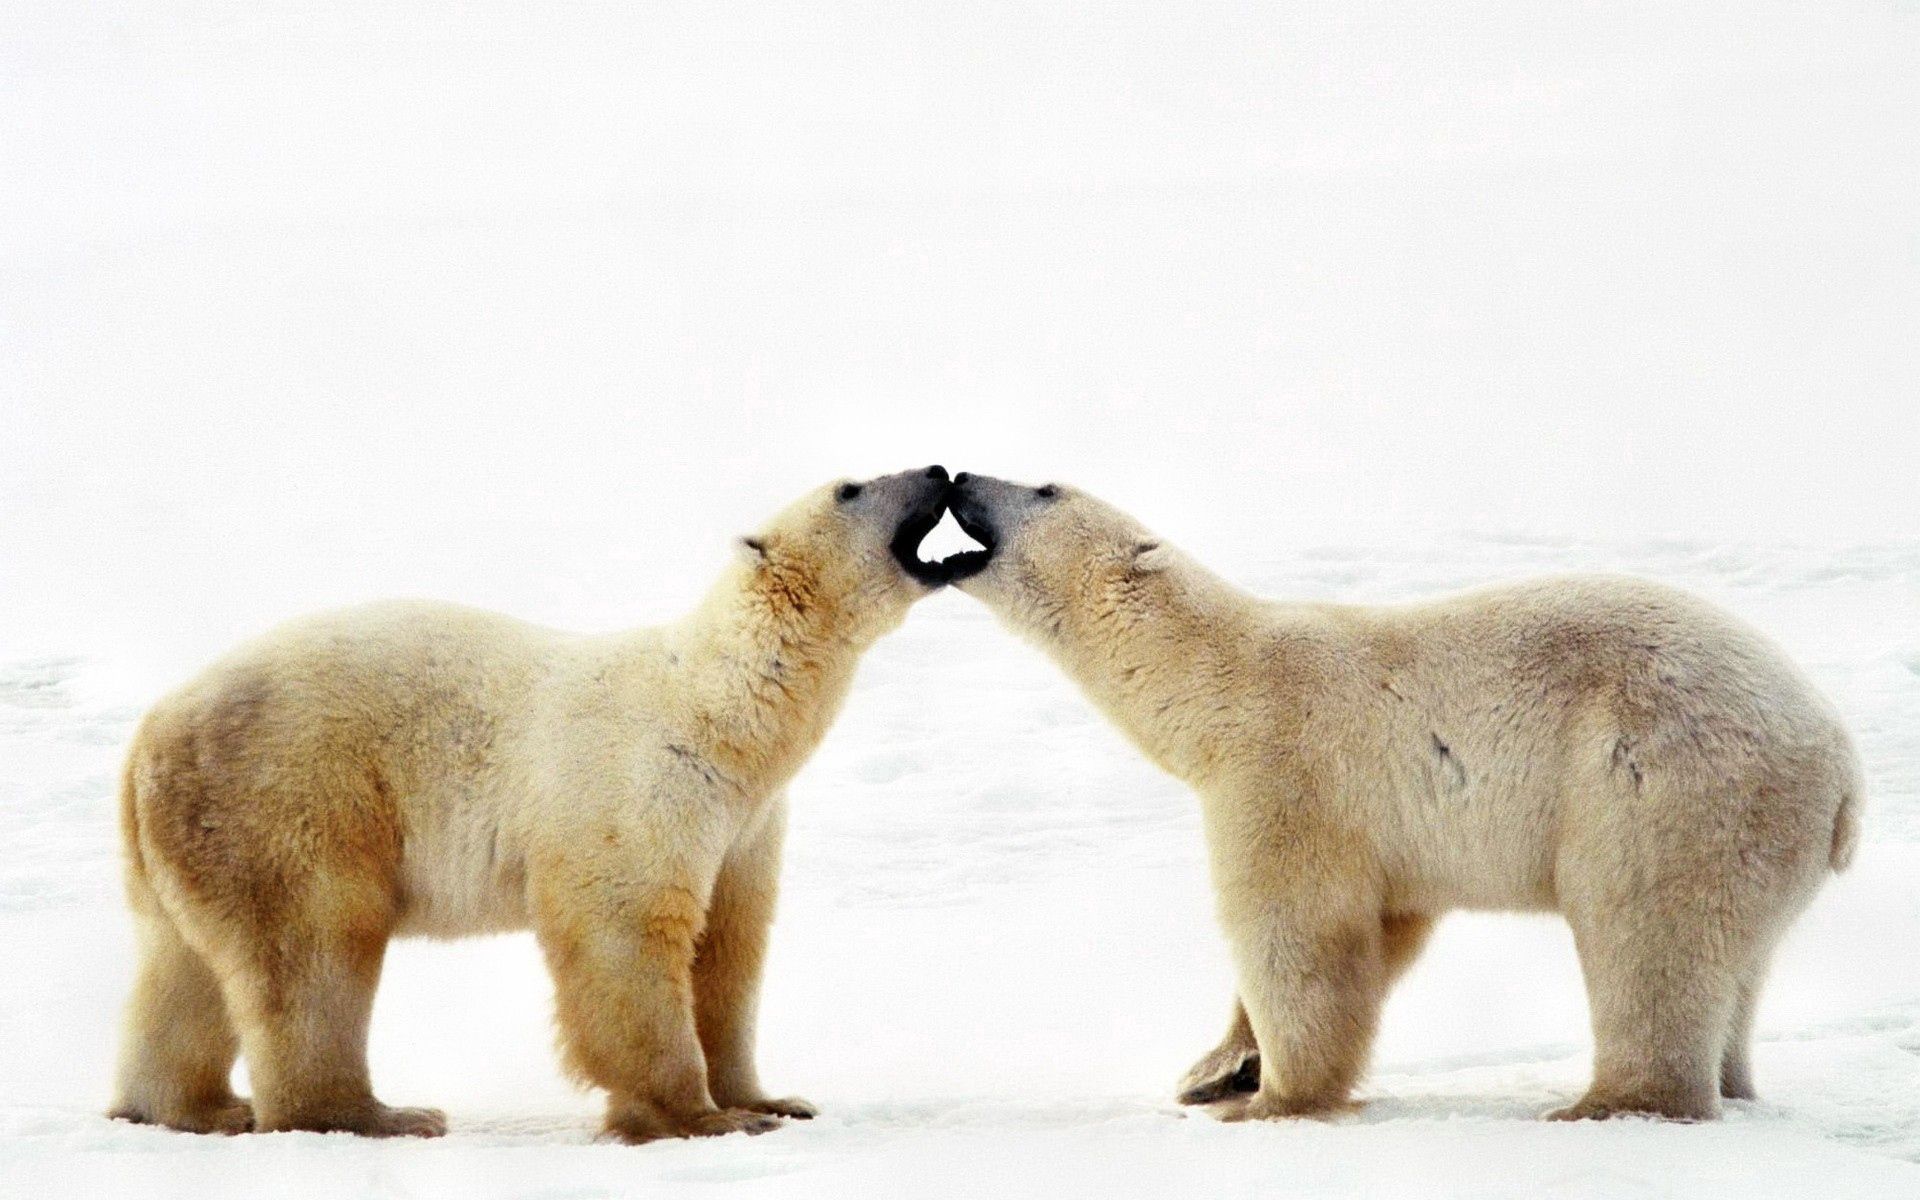 animals, couple, pair, bear, family, care, tenderness, polar bear